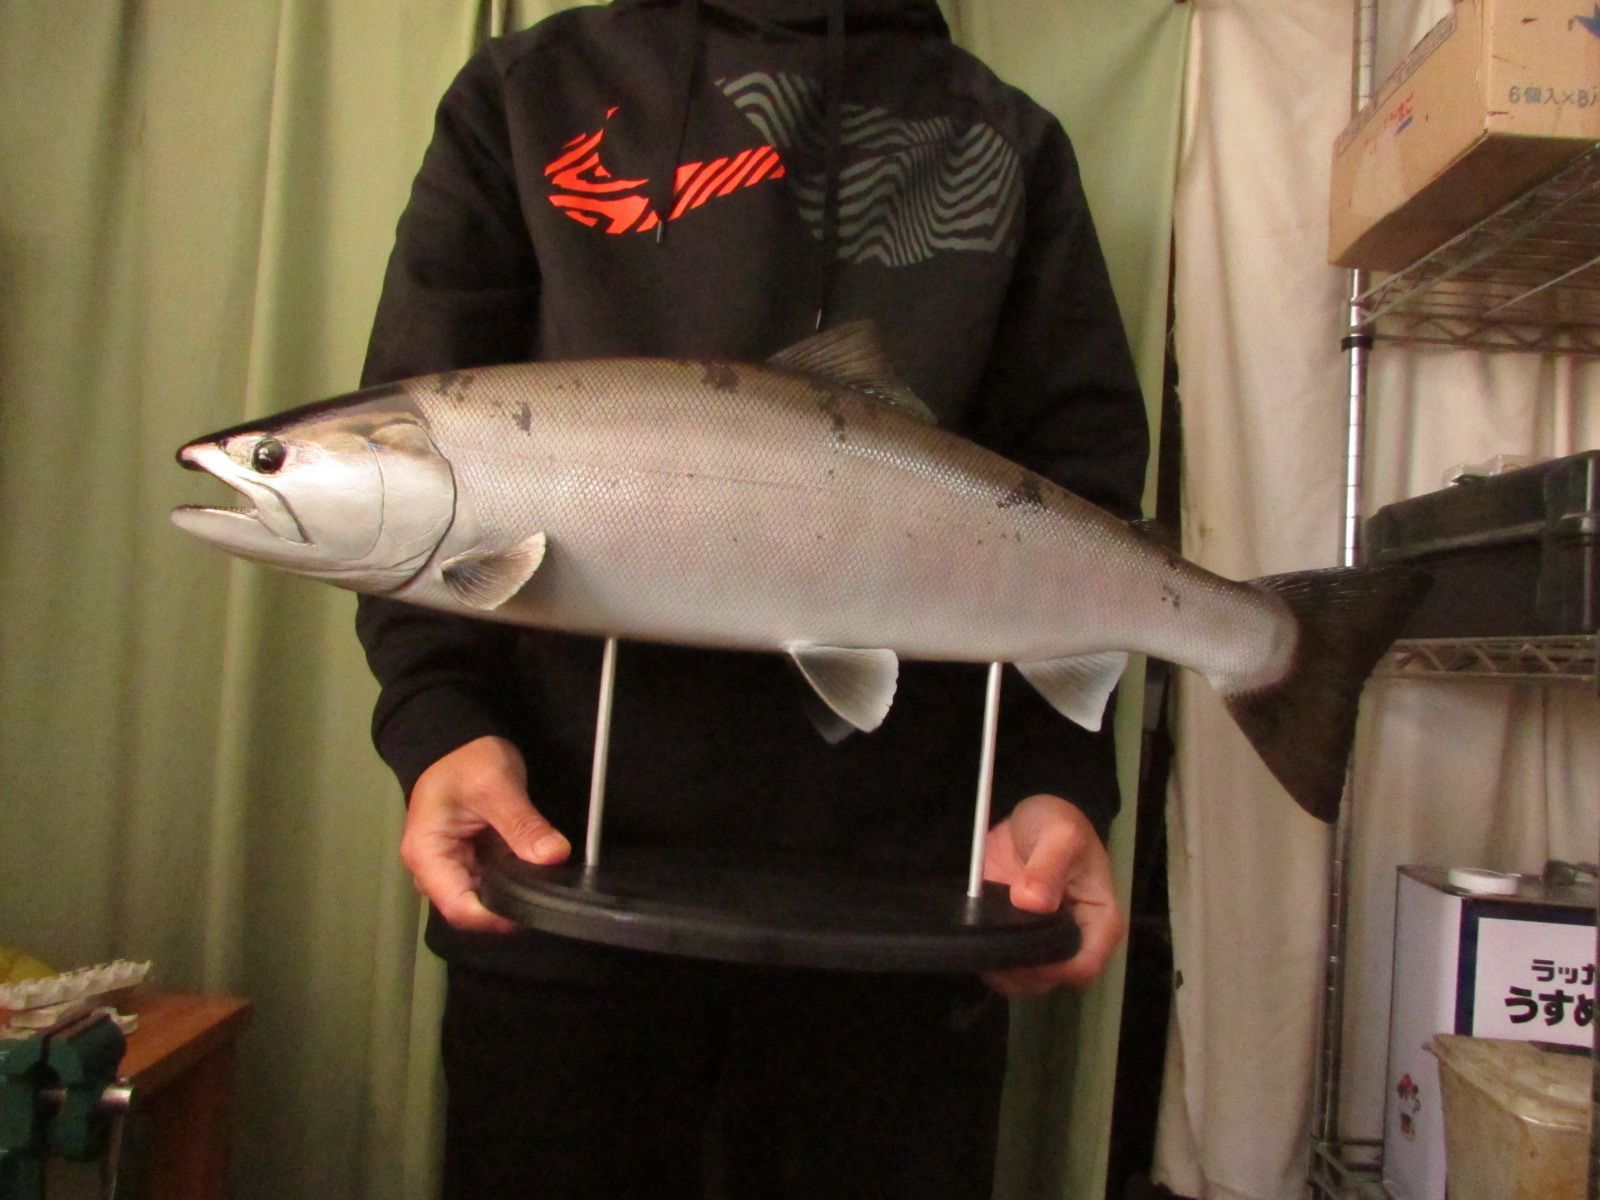 ハンドメイド 64cmサクラマス 桜鱒 釣り フィギュア 魚模型 レプリカ